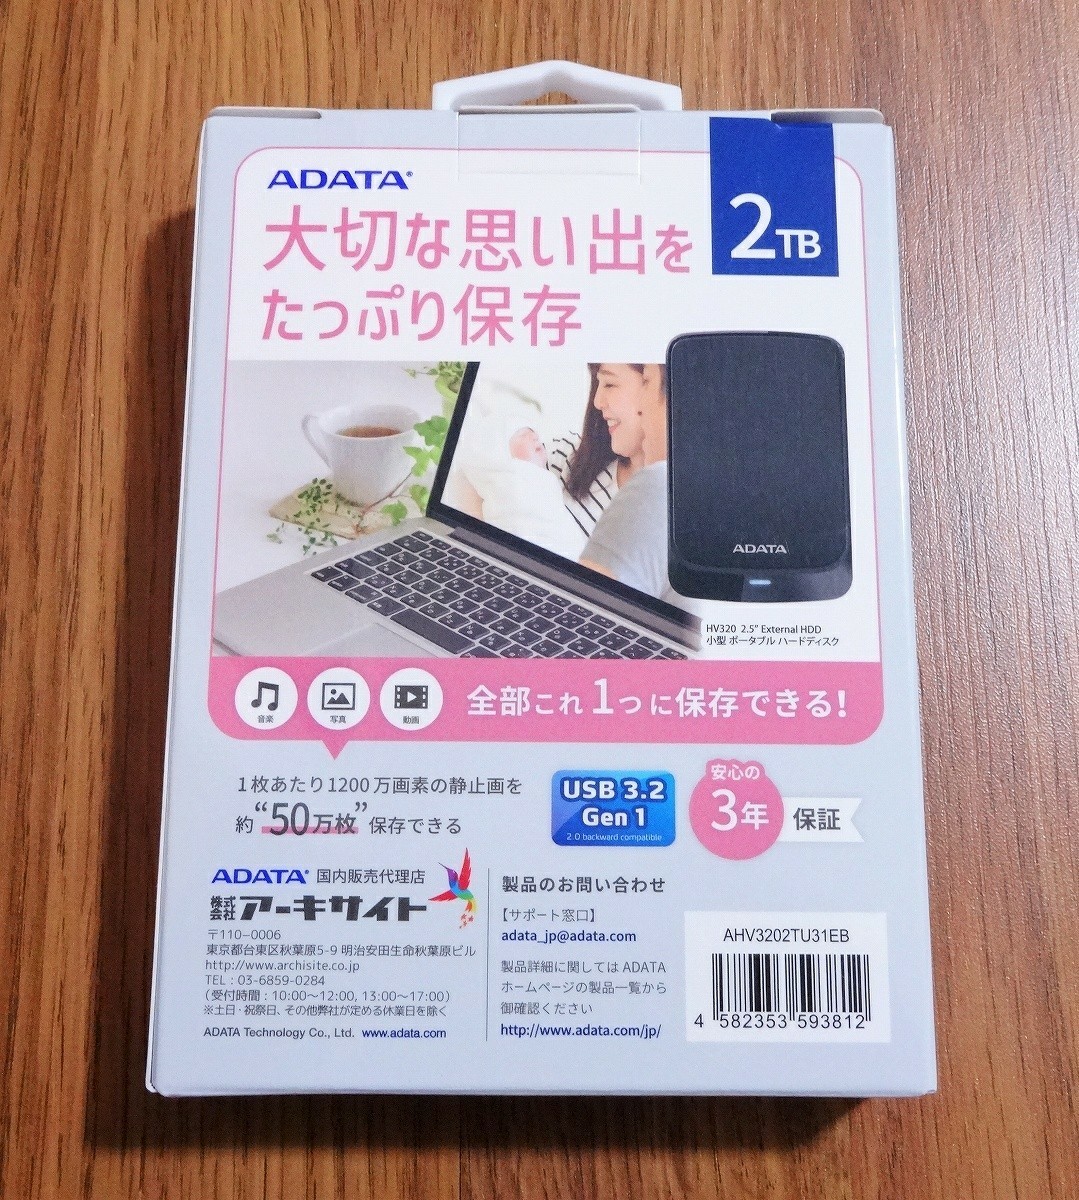 [新品] ADATA 2TB ポータブルハードディスク AHV3202TU31EB ブラック